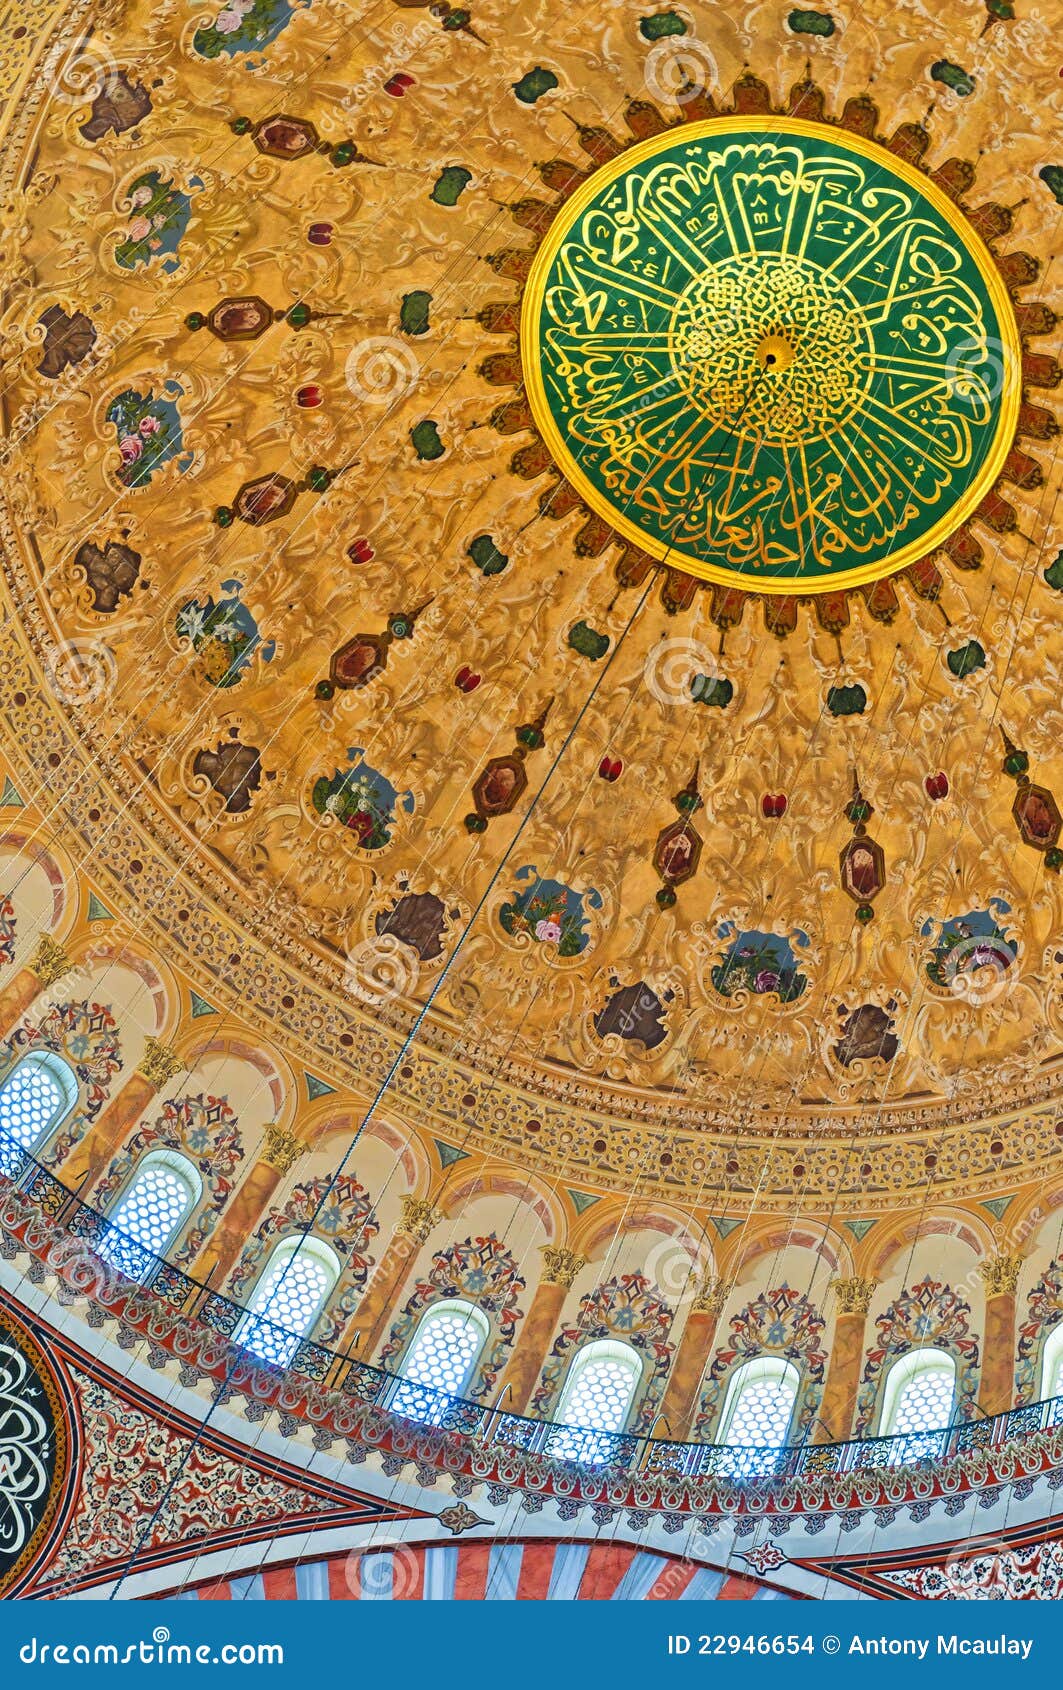 suleiman mosque interior 08